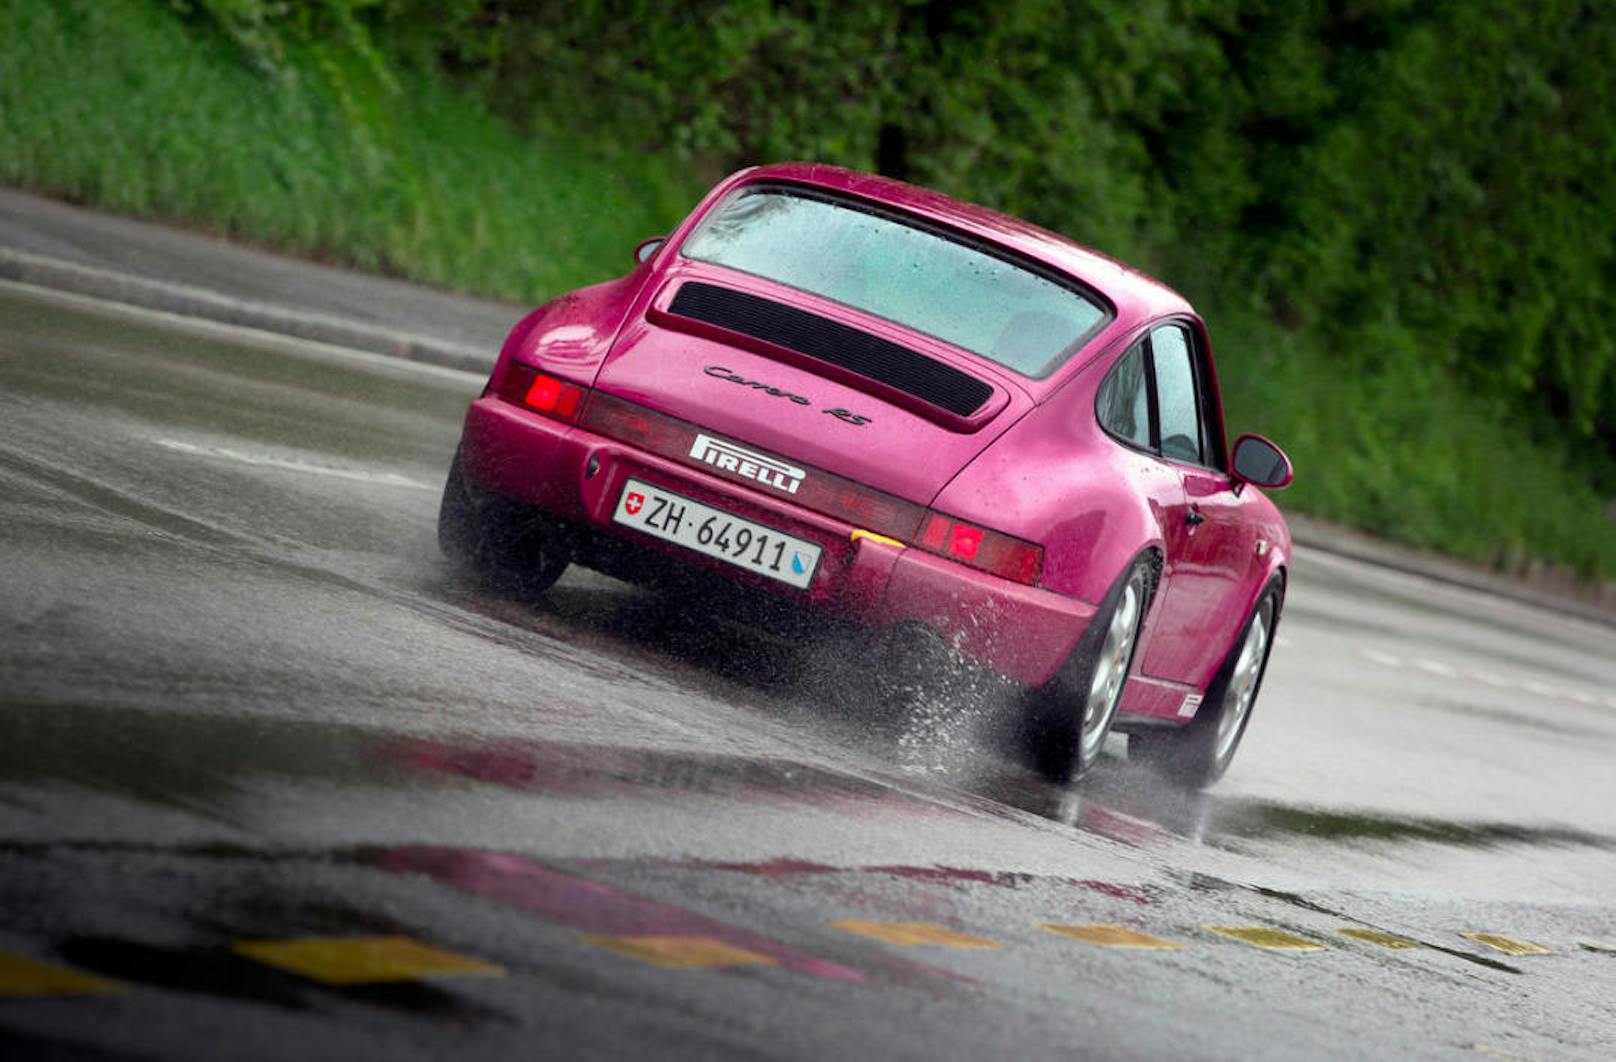 Weniger als 20 Sekunden vergehen, bis ein entfesselter Porsche 964 RS Tempo 200 km/h erreicht. Nicht schlecht für ein 25-jähriges Auto!